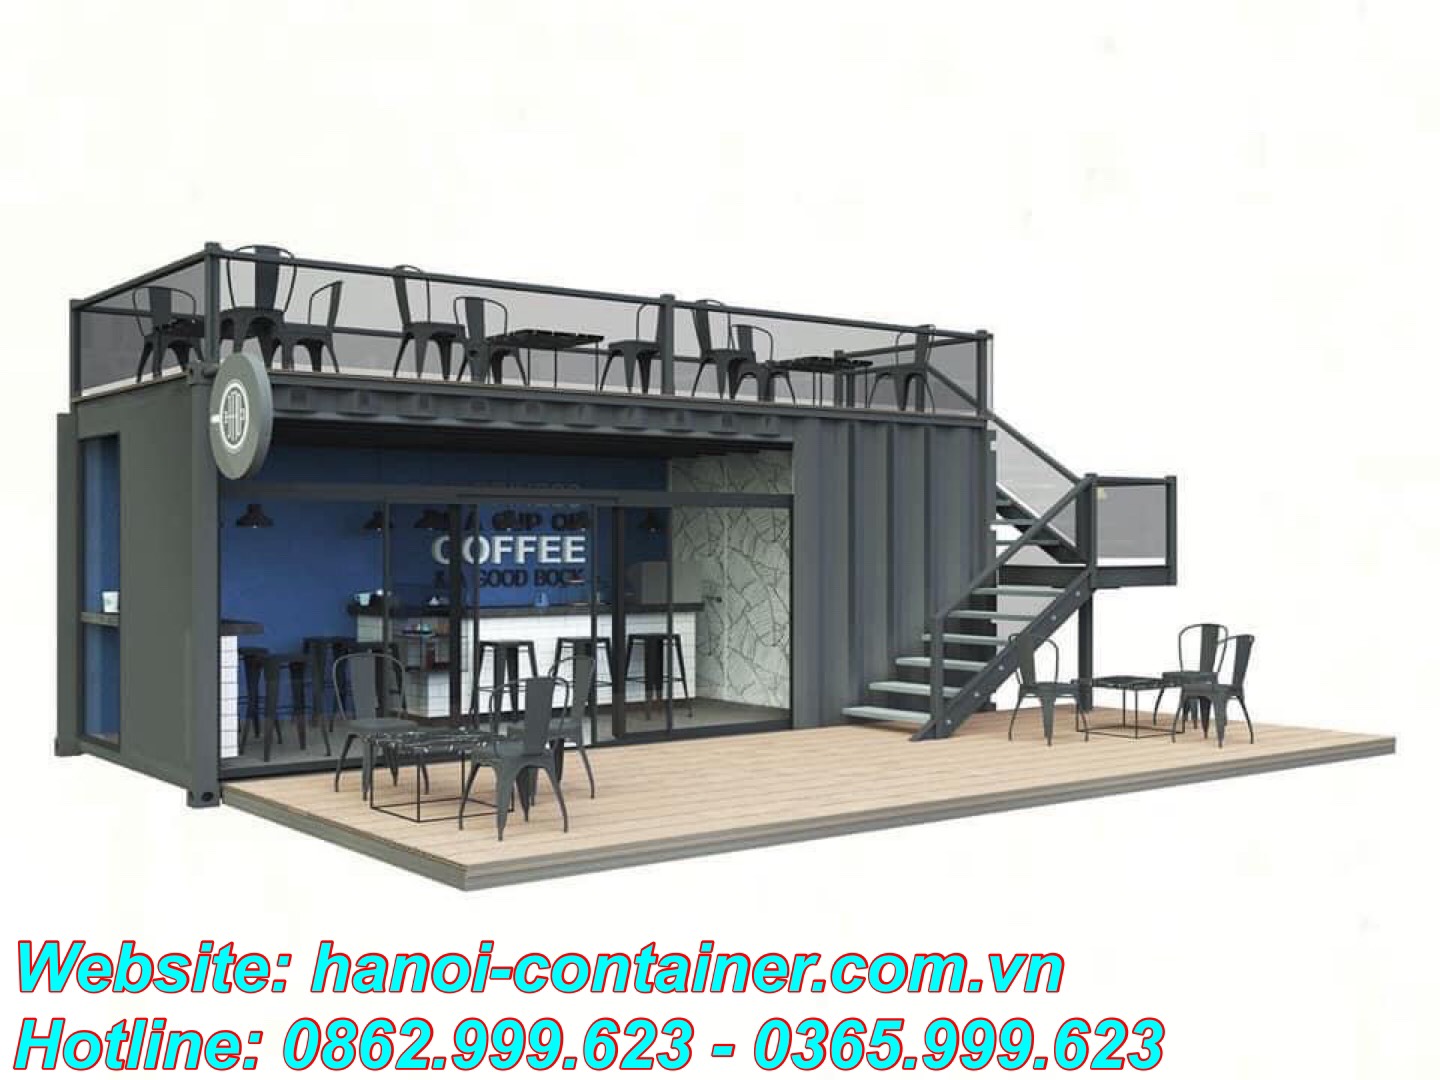 Mô hình quán cafe bằng container